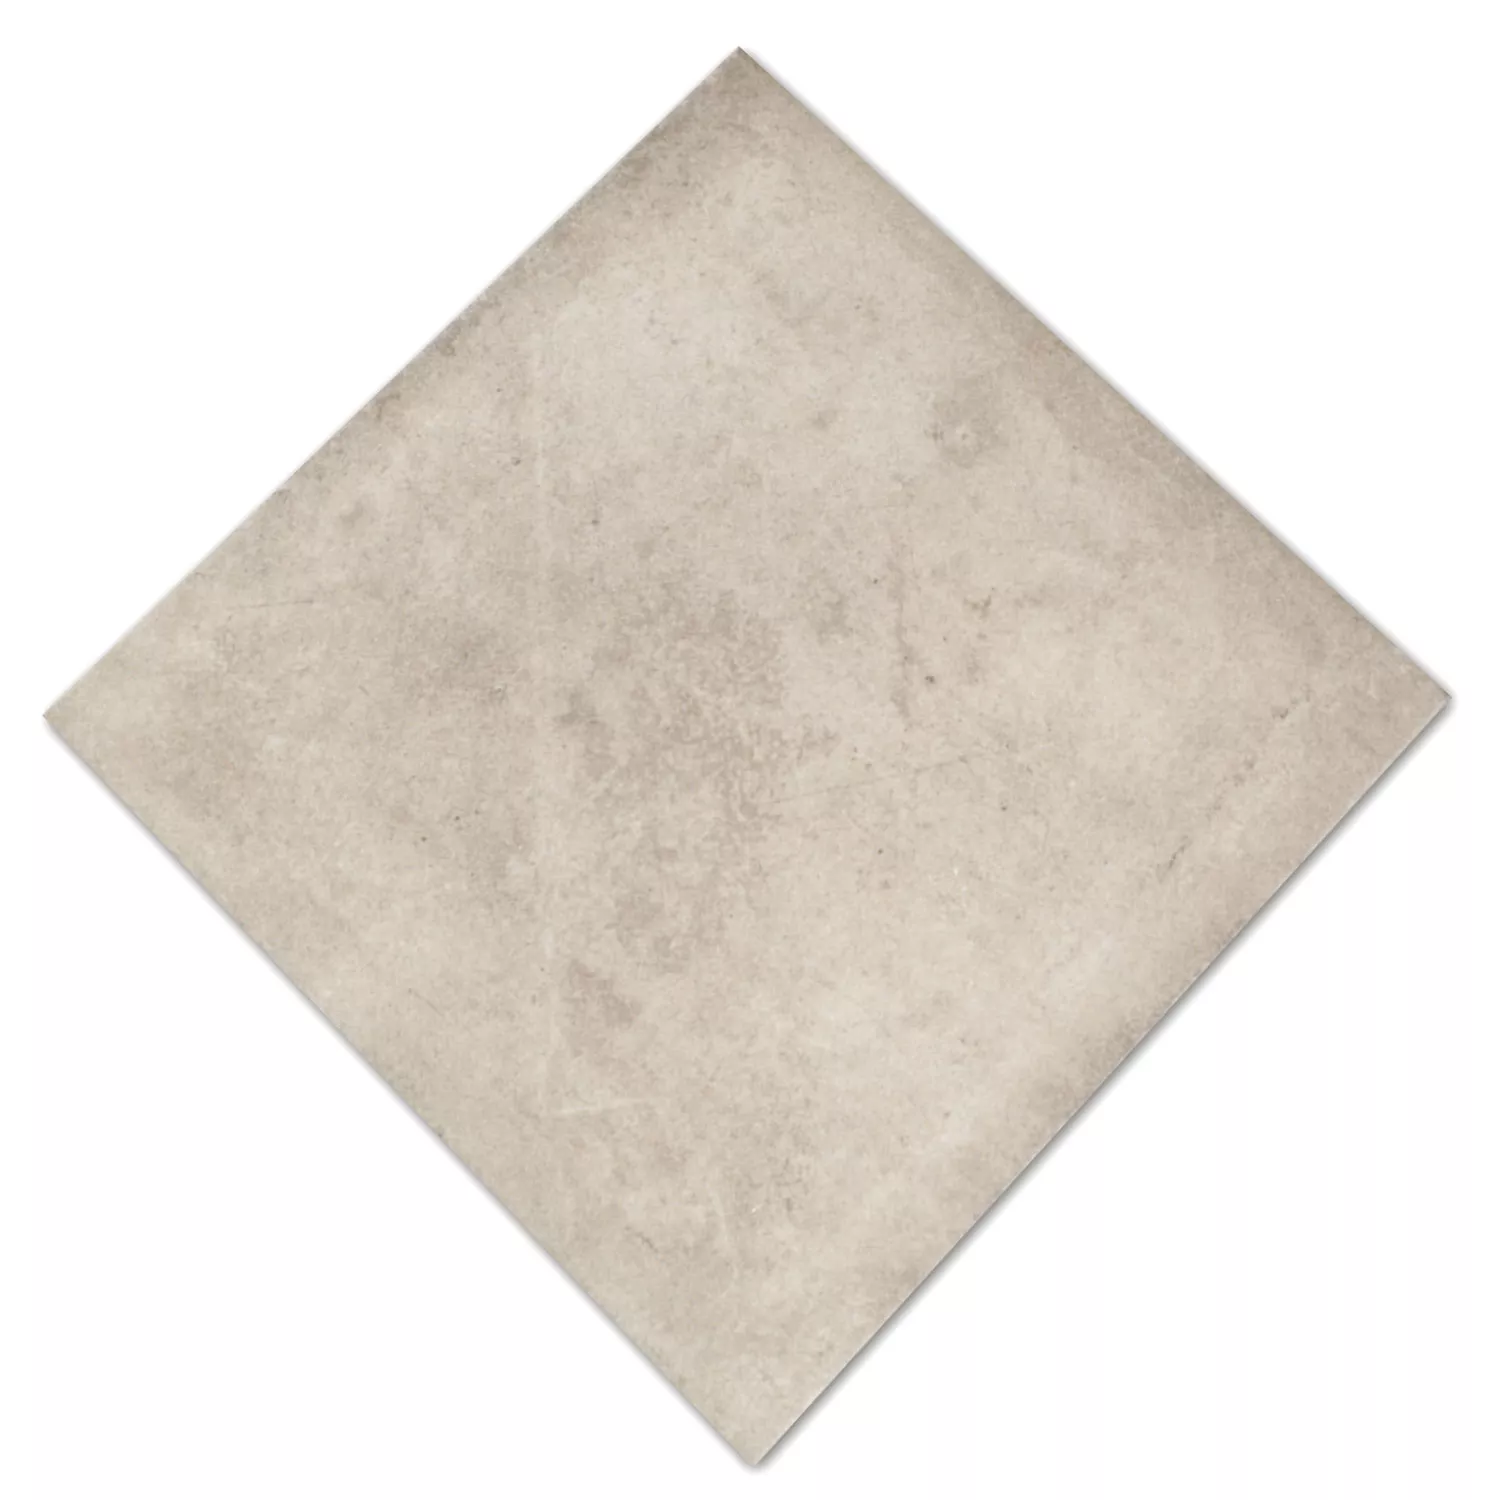 Sample Cement Tiles Optic Floor Tiles Milano Greige